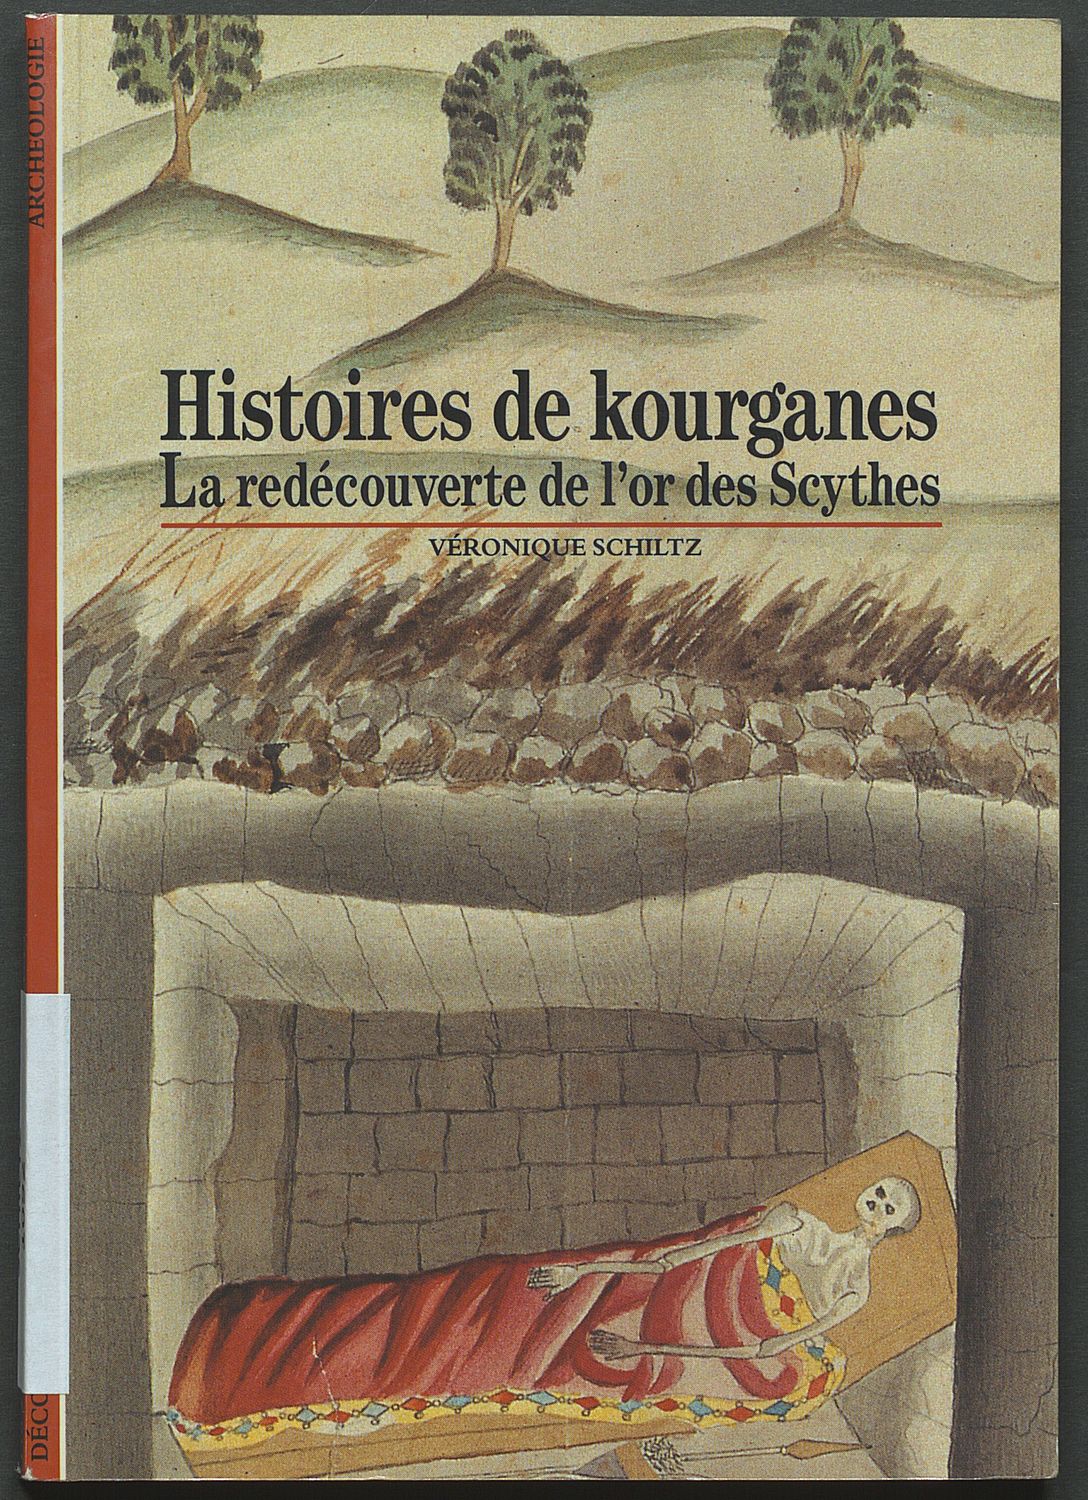 Histoire de kourganes